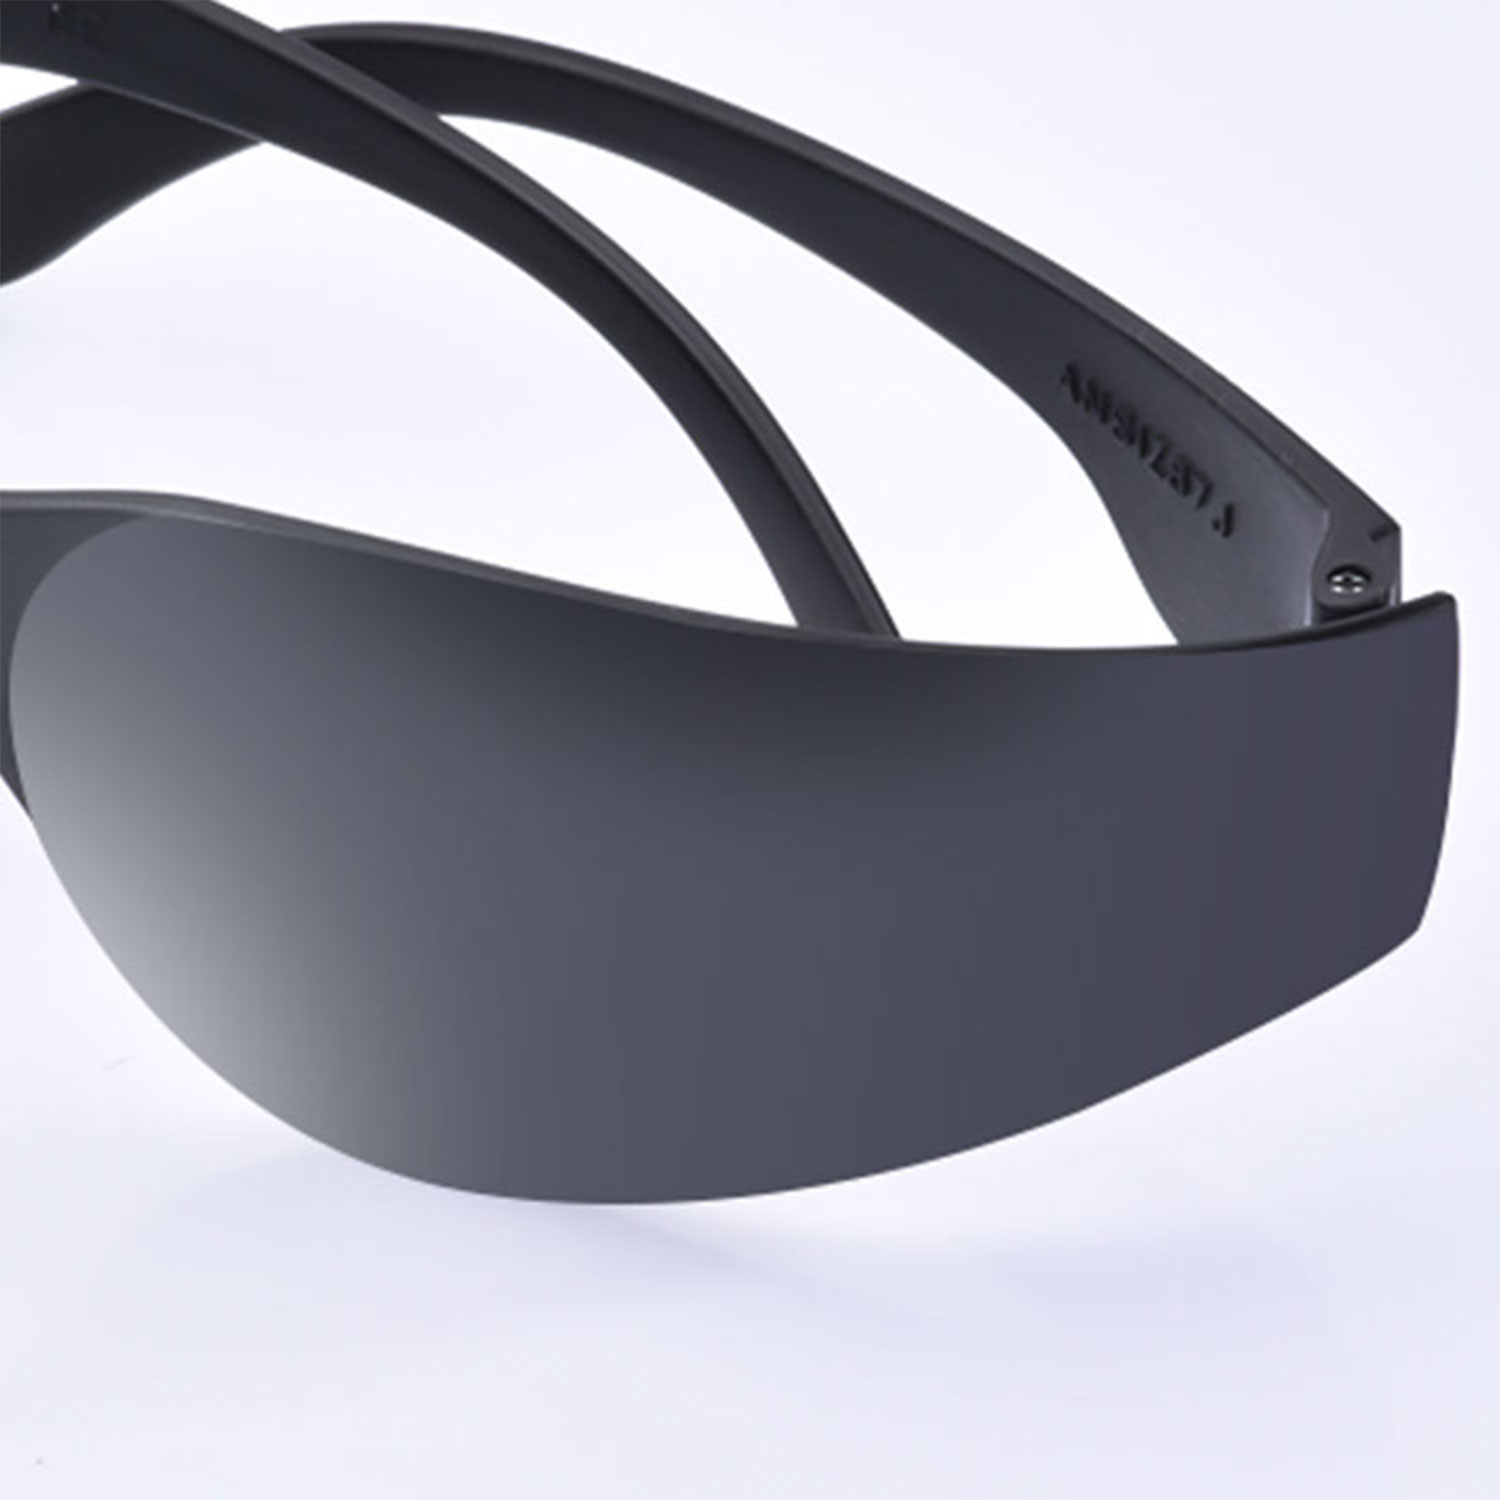 Gafas de sol protectoras de seguridad SG001 Negro